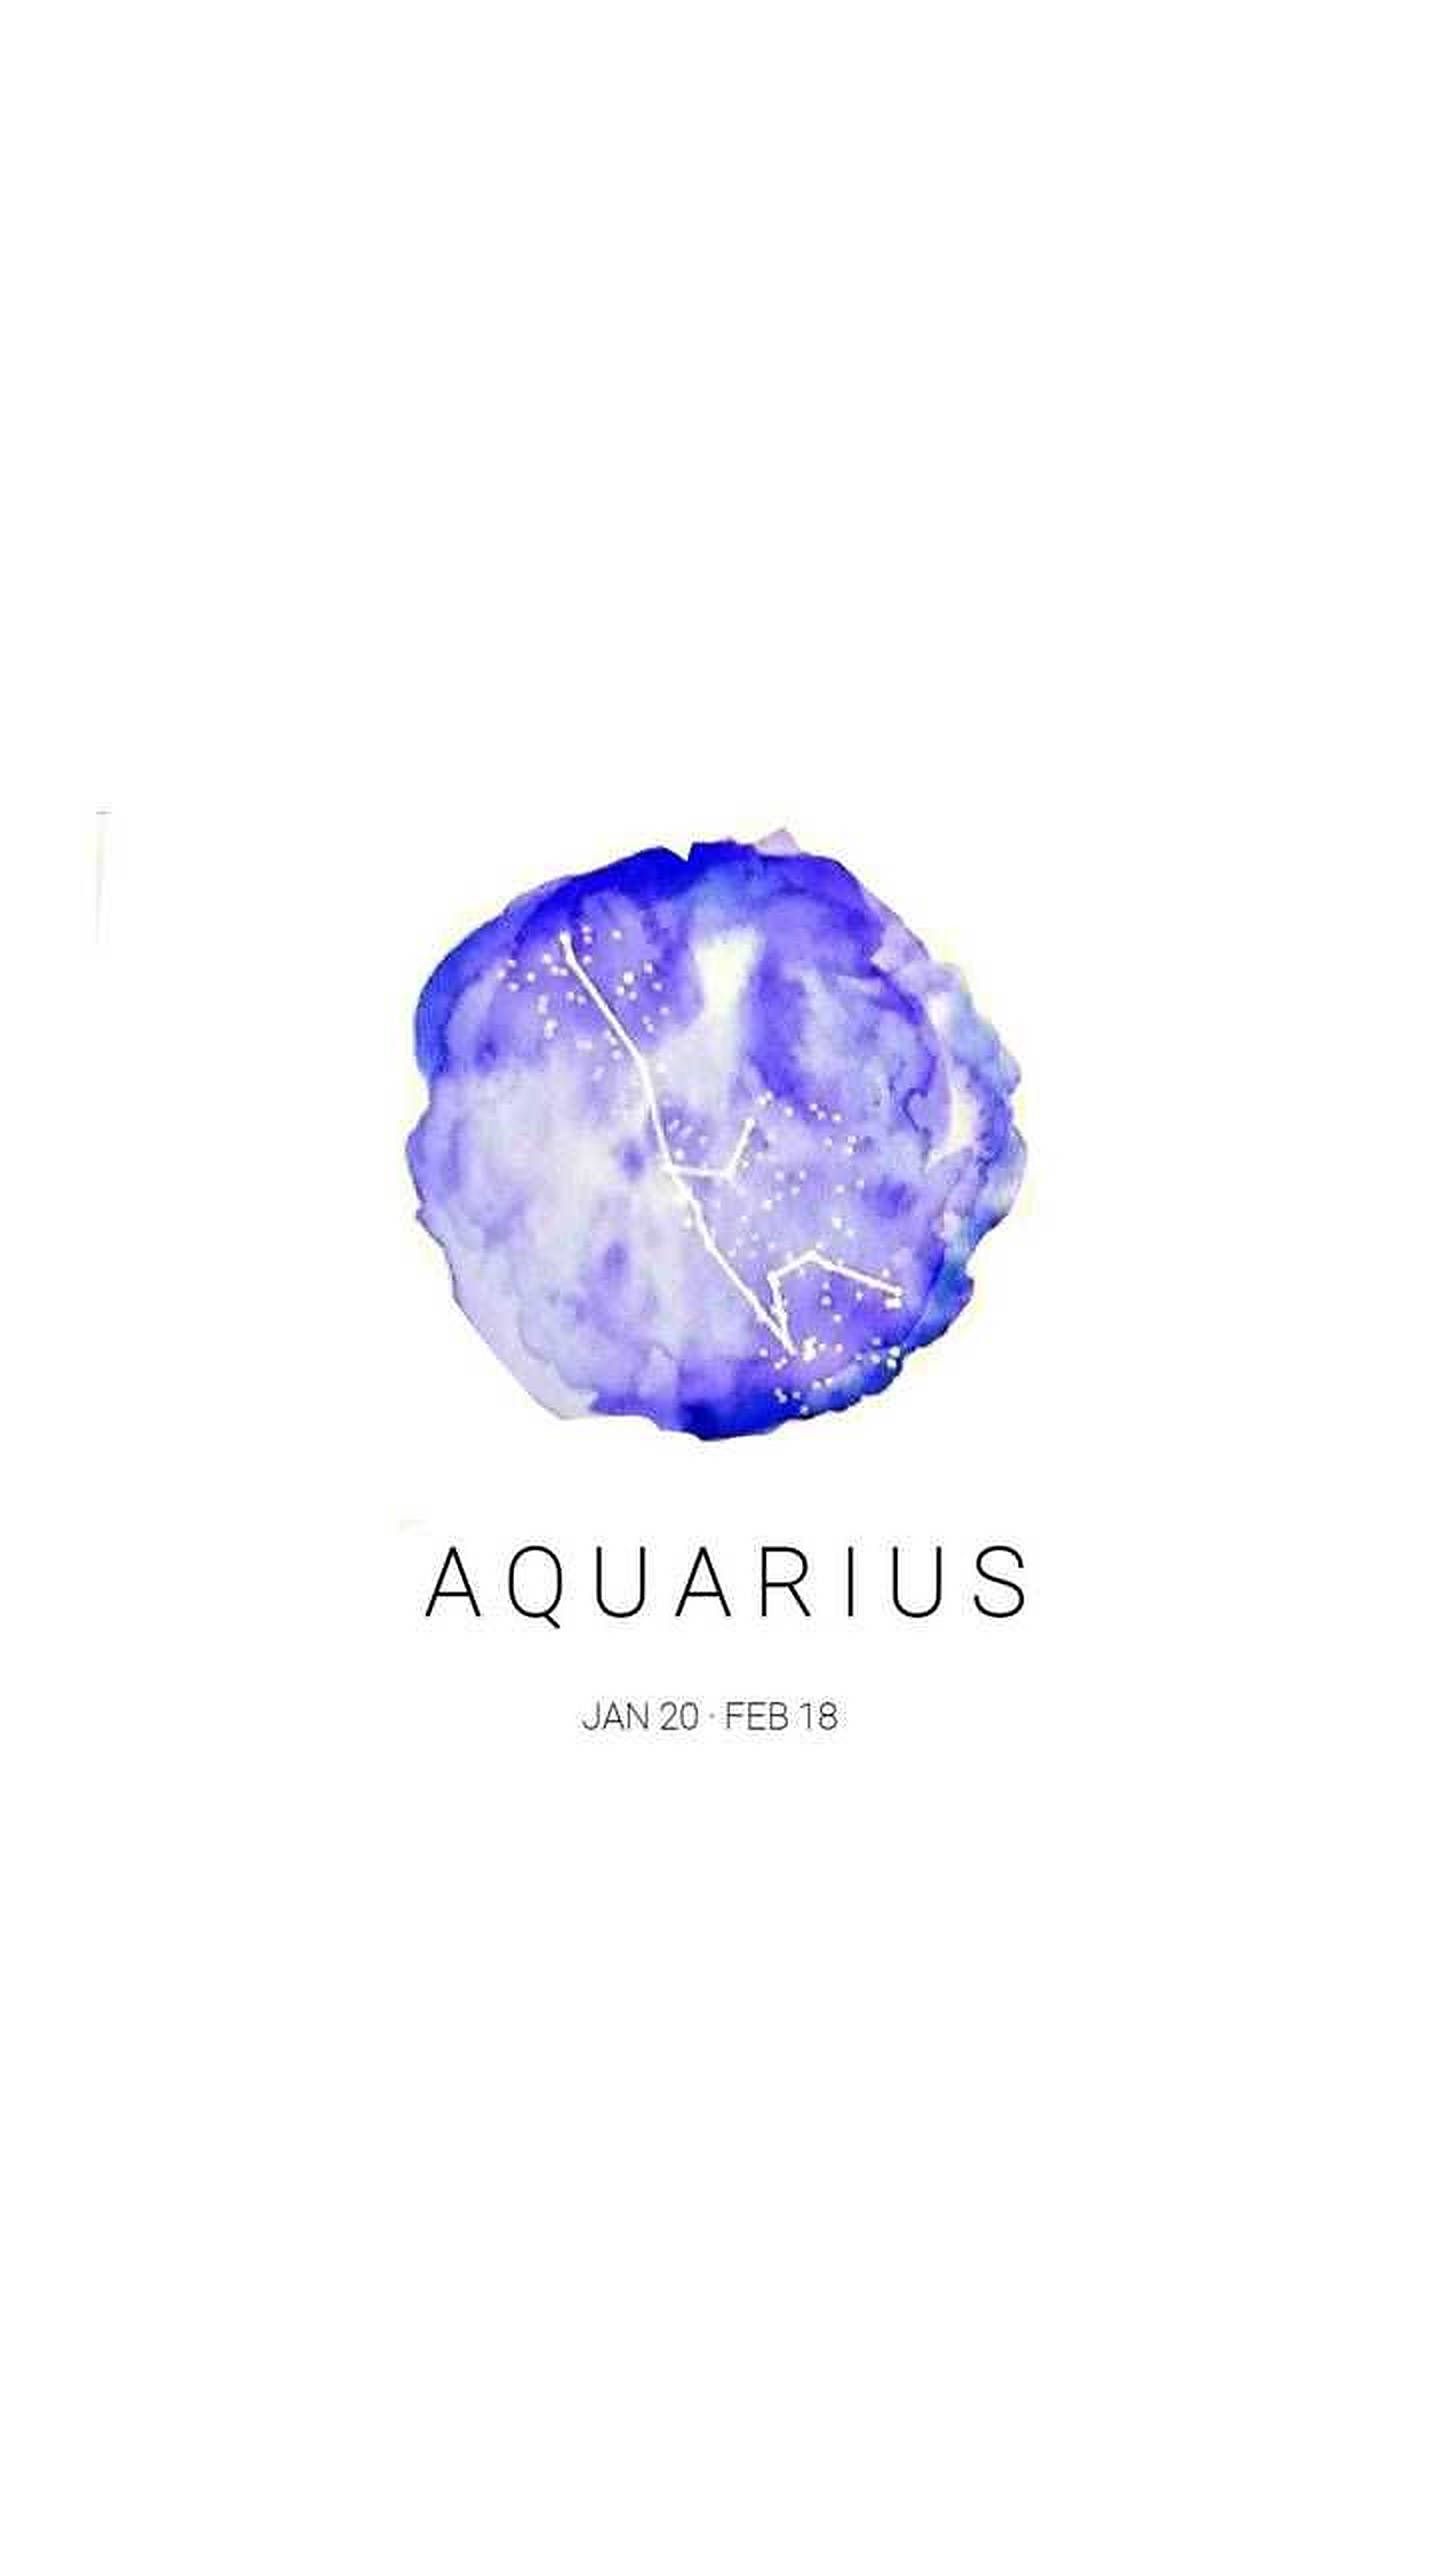 Aquarius logo with the title 'aquarious' - Indigo